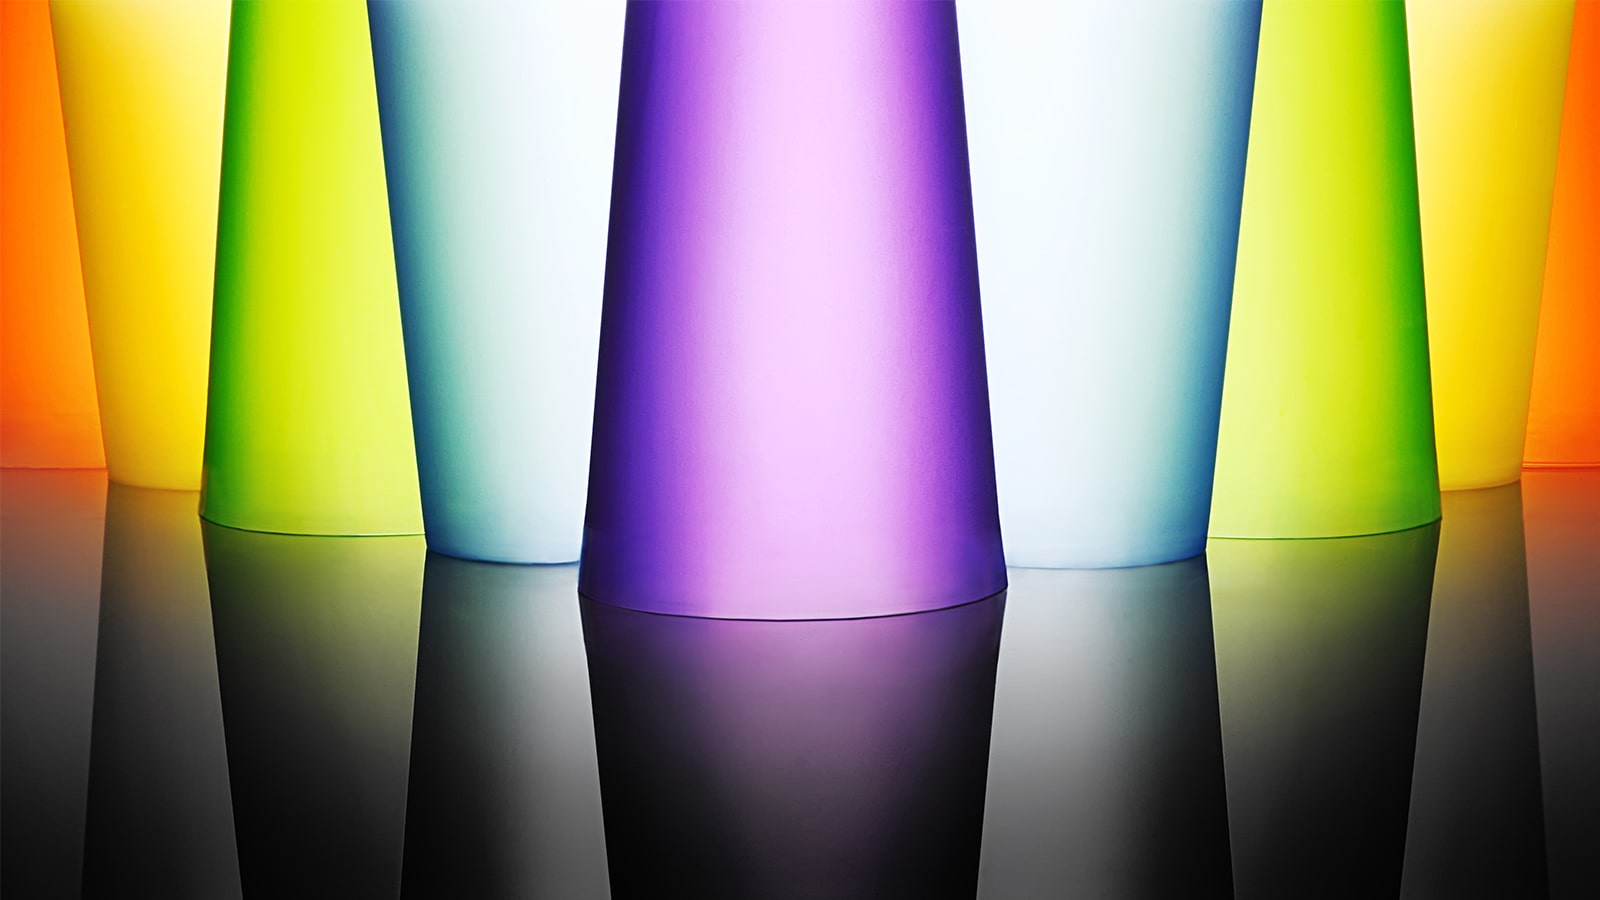 En bild av ljusa och färggranna glasbägare.